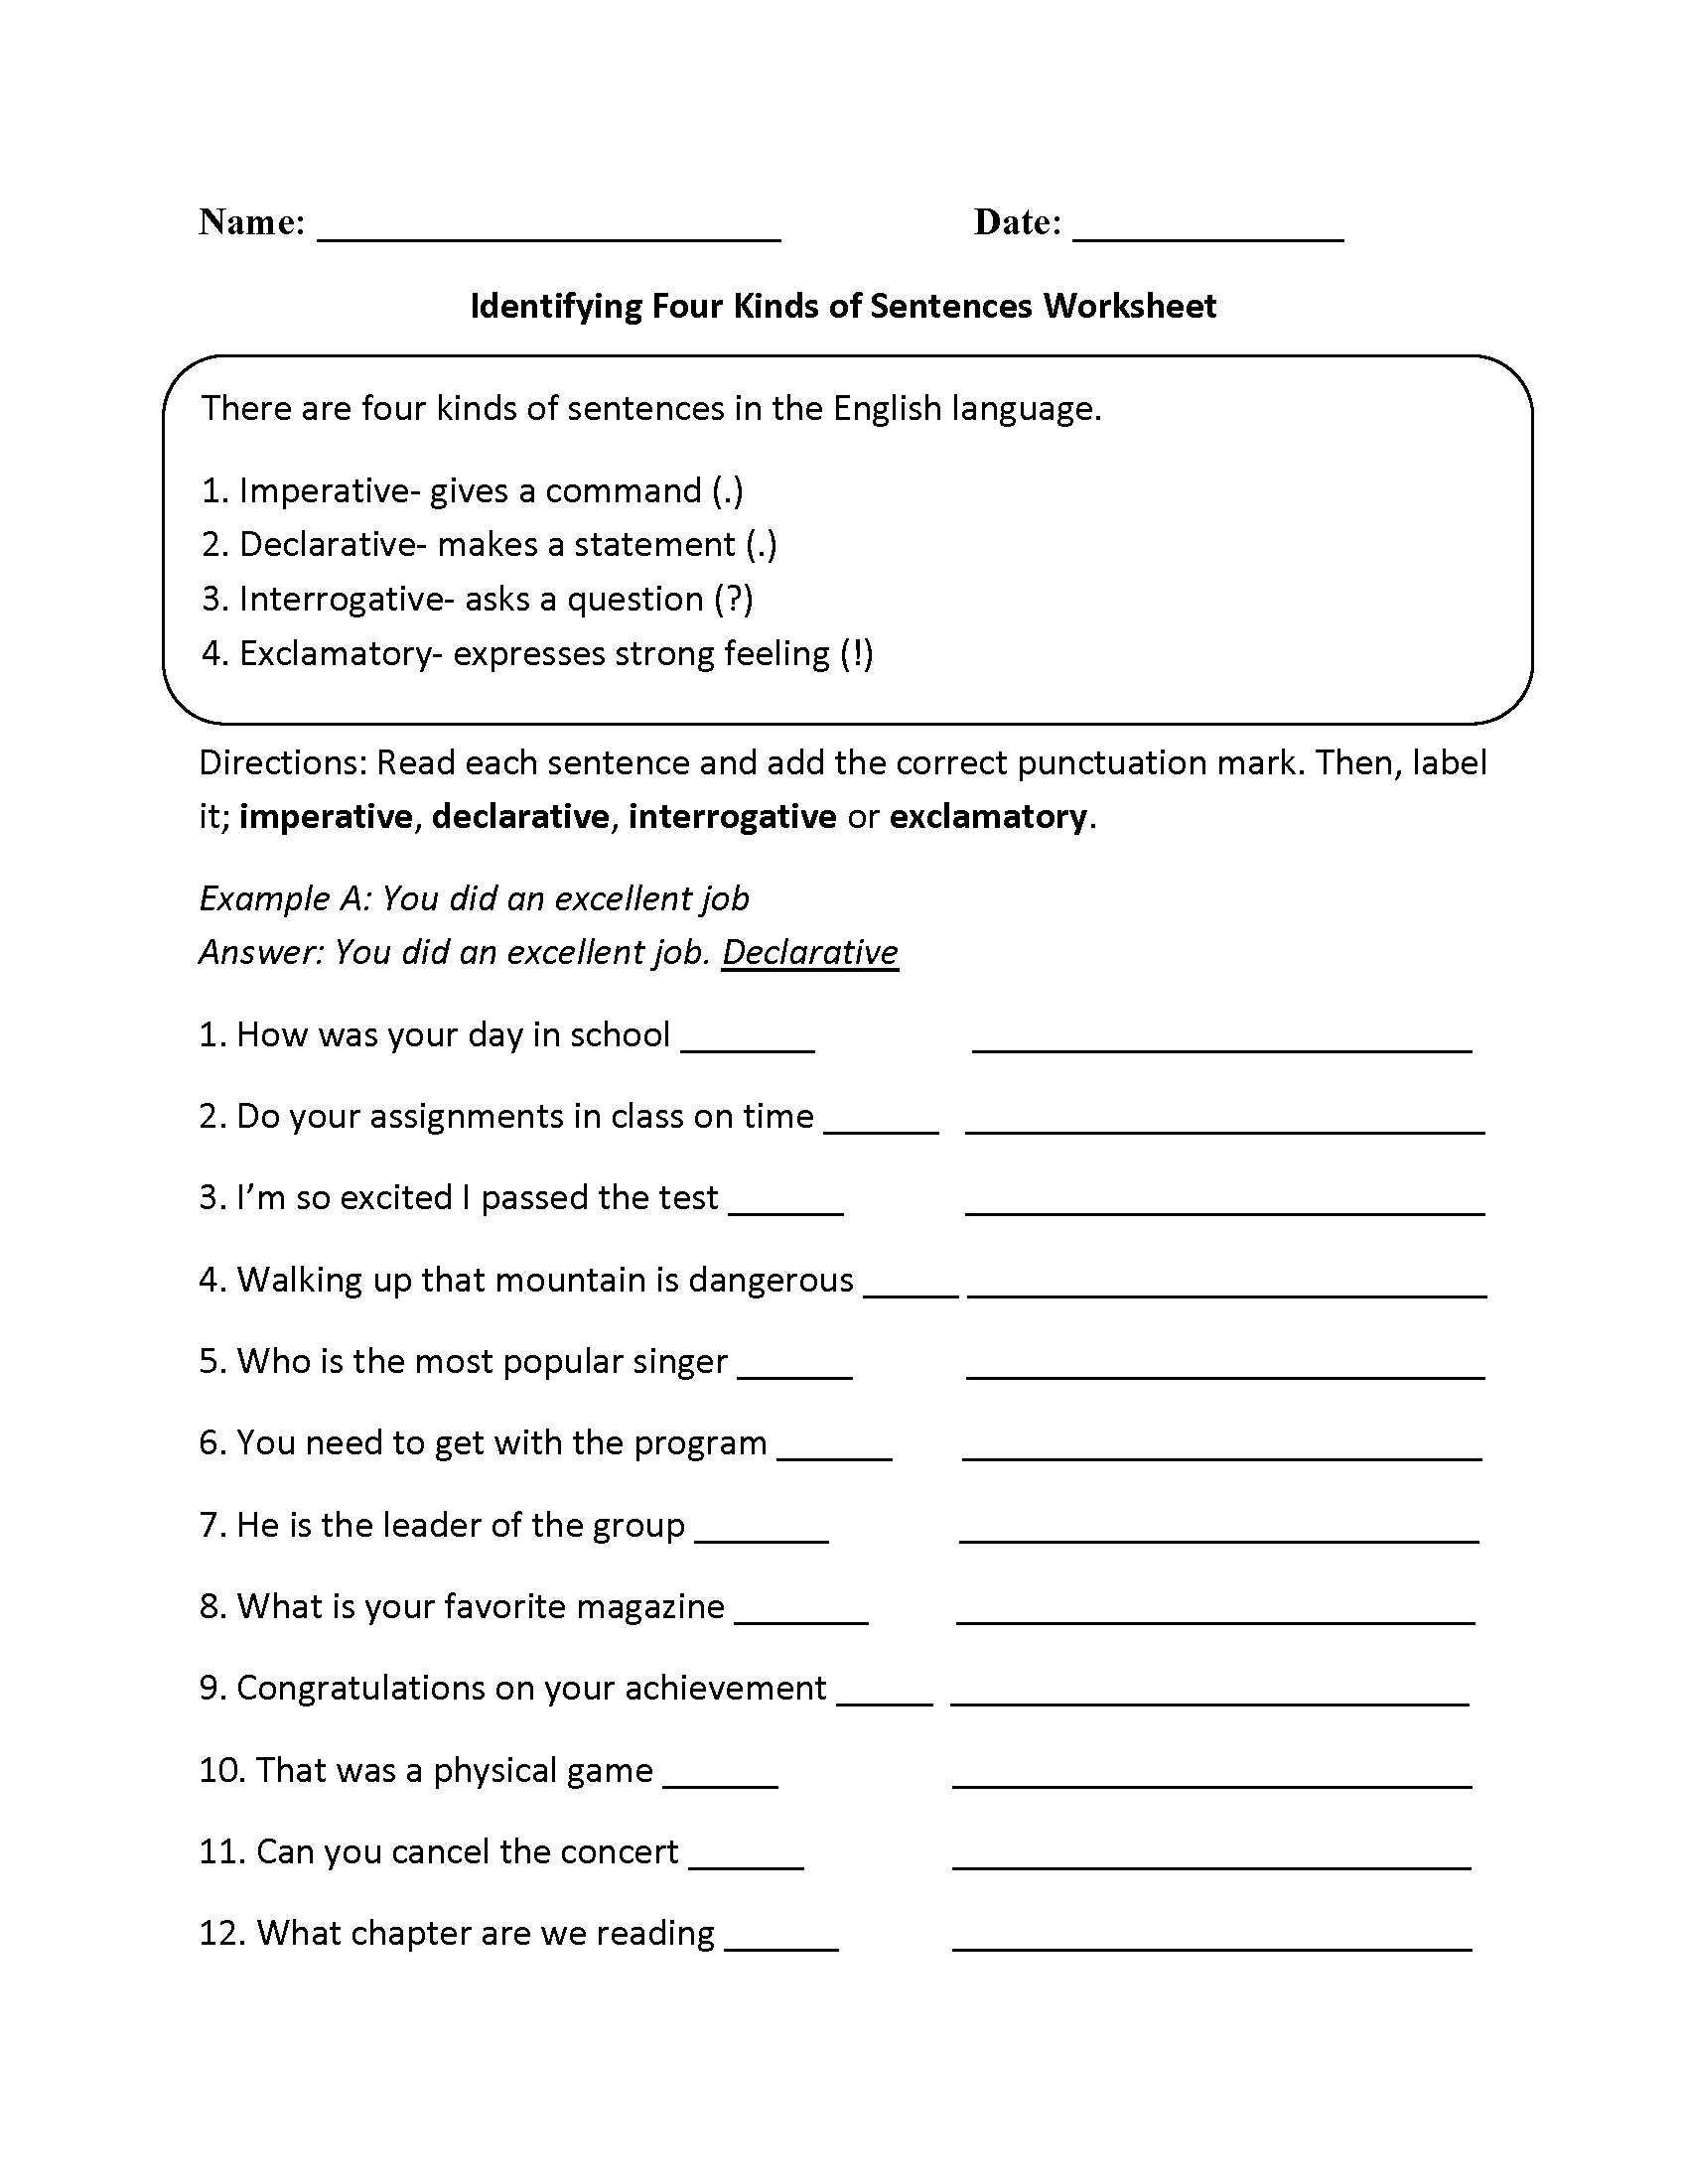 kinds-of-sentences-worksheet-db-excel